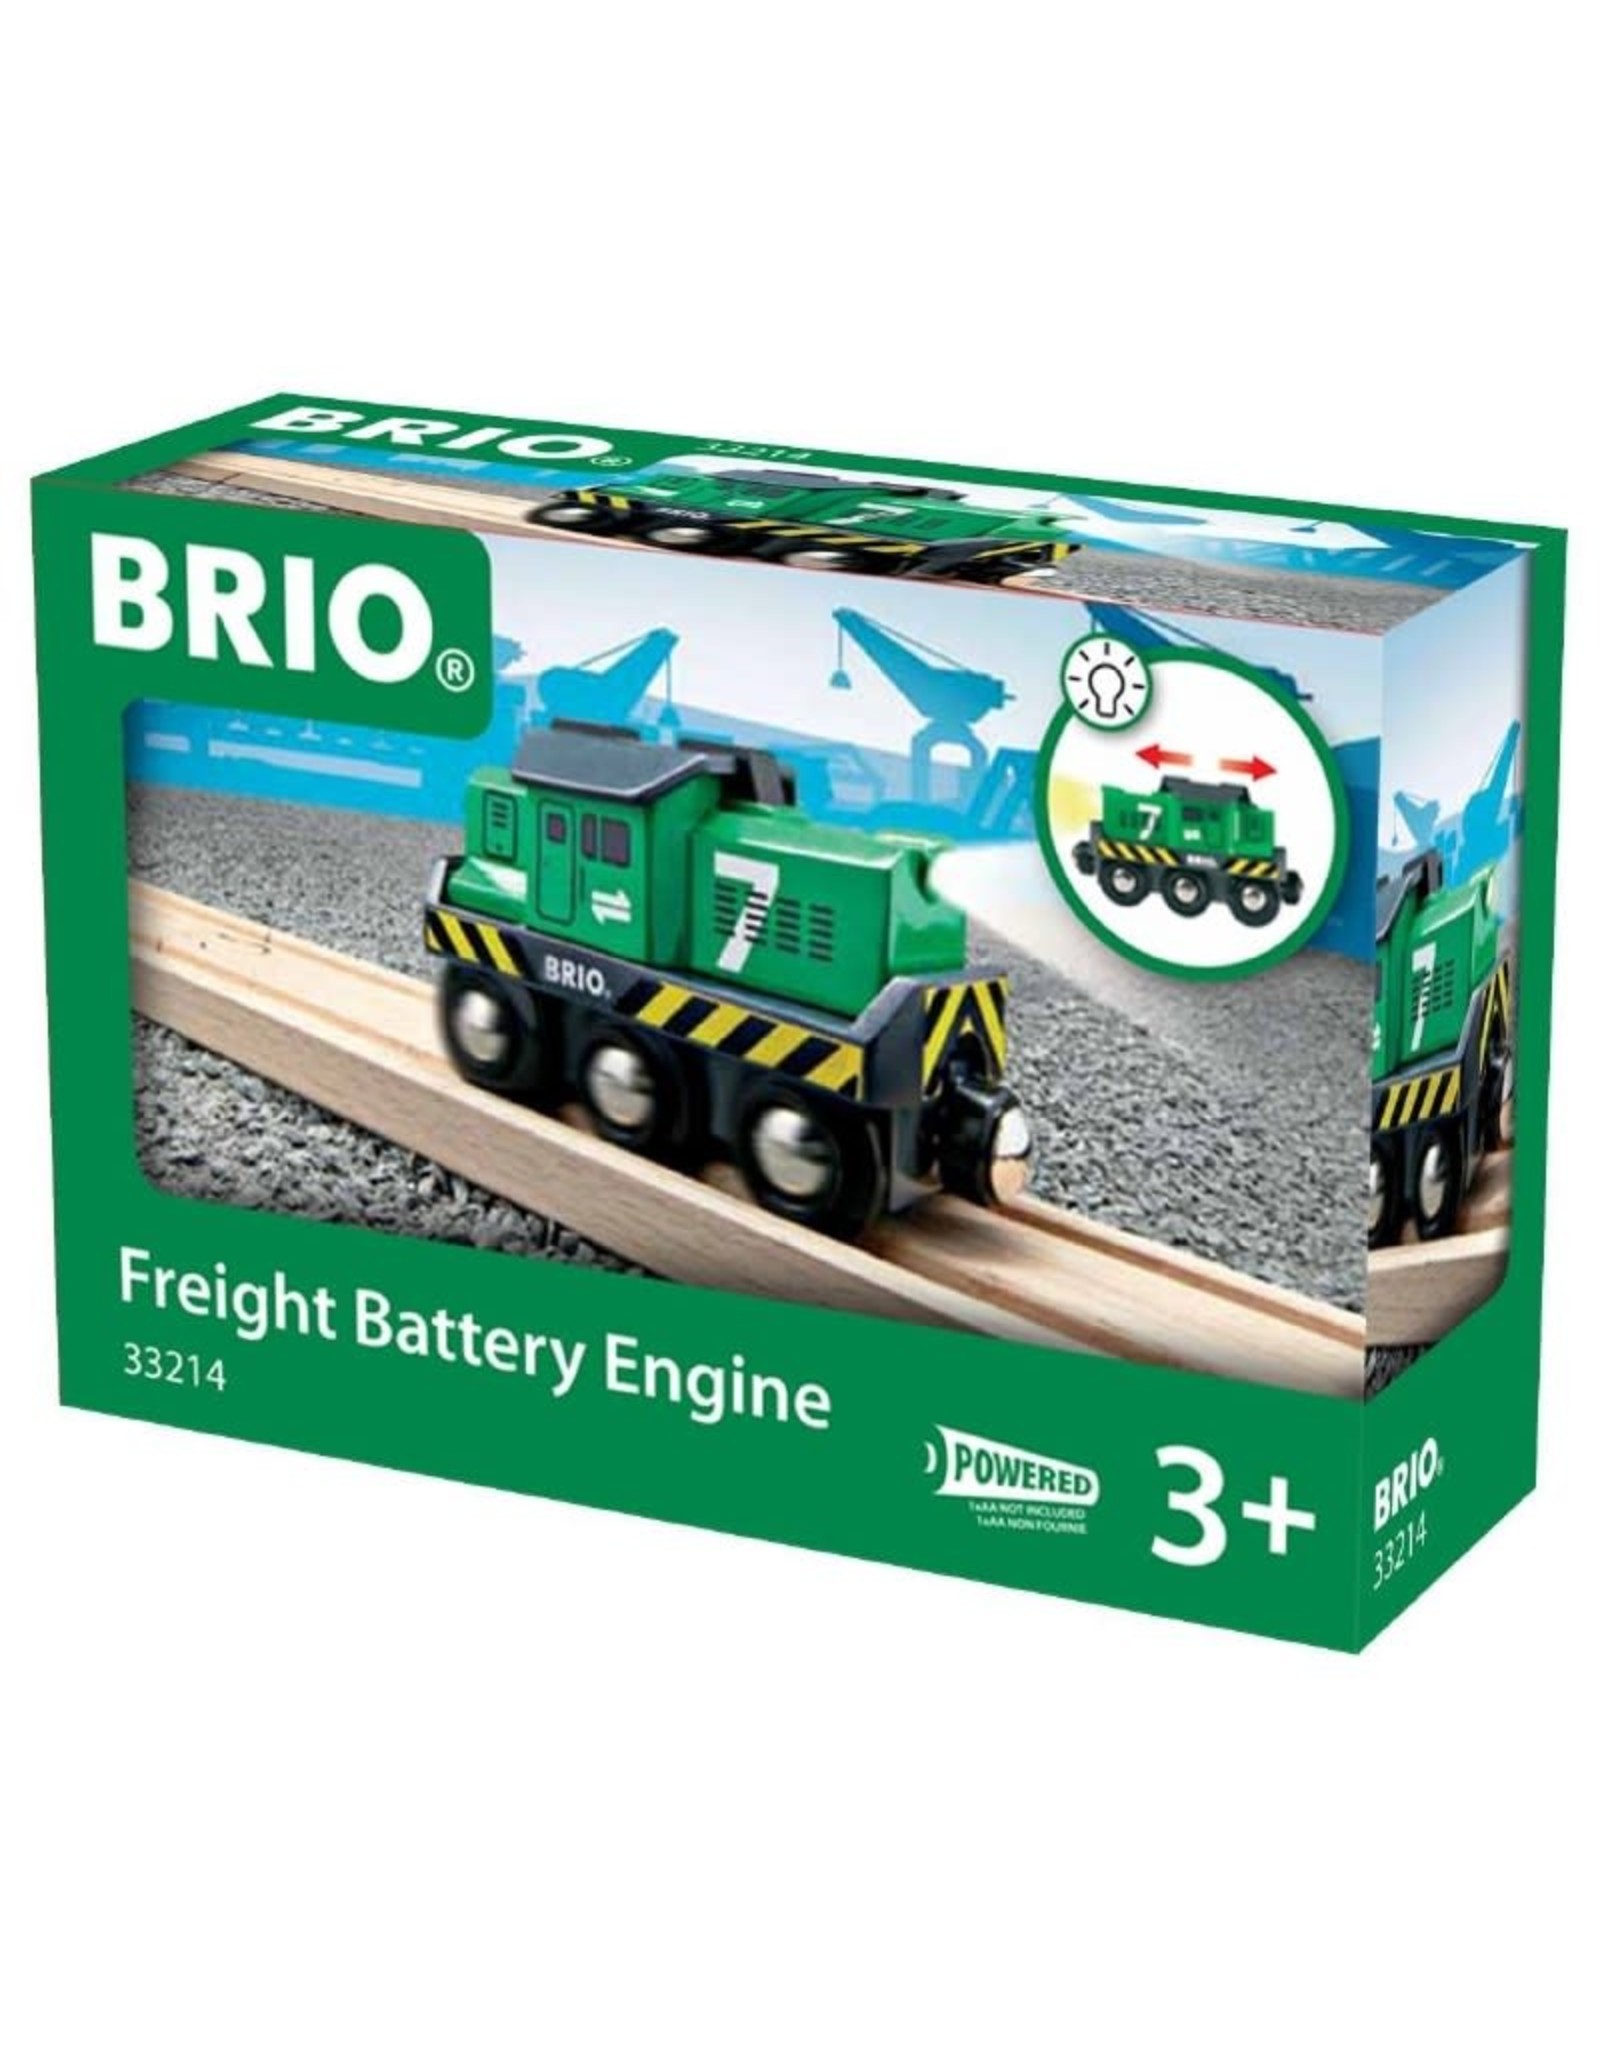 Brio BRIO Freight Battery Engine